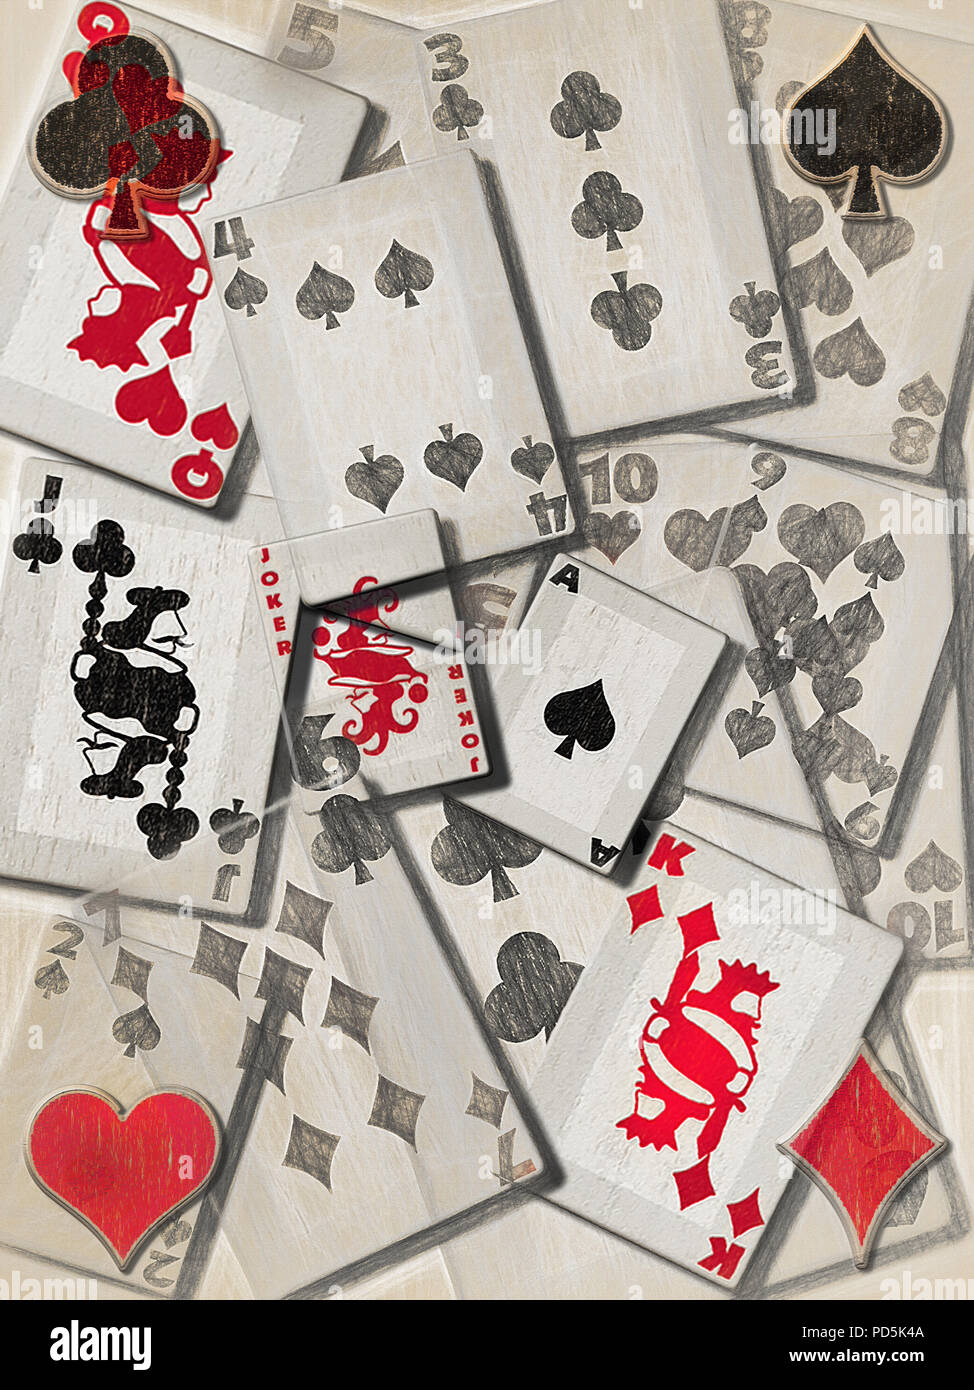 Varie carte da gioco da tutti e 4 i vestiti e da deuce to Ace e Joker come bene, sono sovrapposti, disposti e in stile per un astratto eff artistica Foto Stock